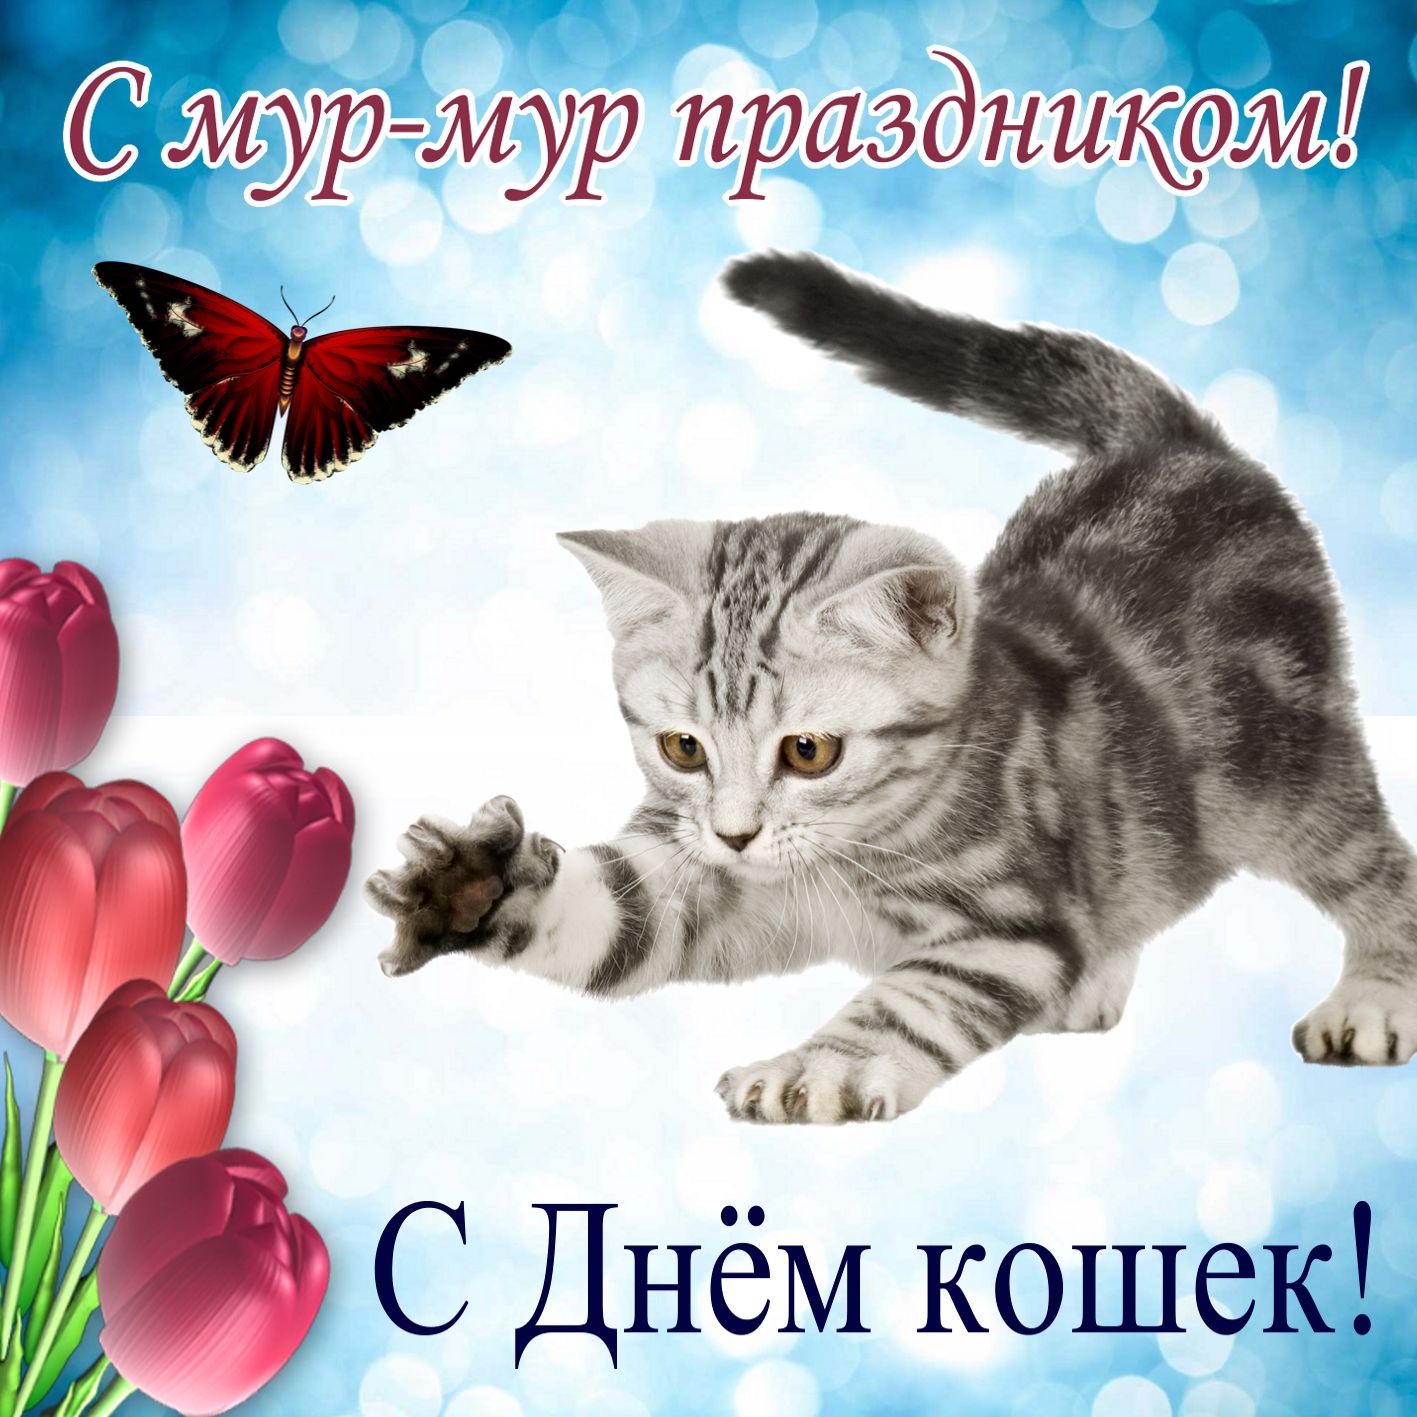 Развлечение день кошек. День кошек. Всемирный день кошек поздравления. День кошек открытки.